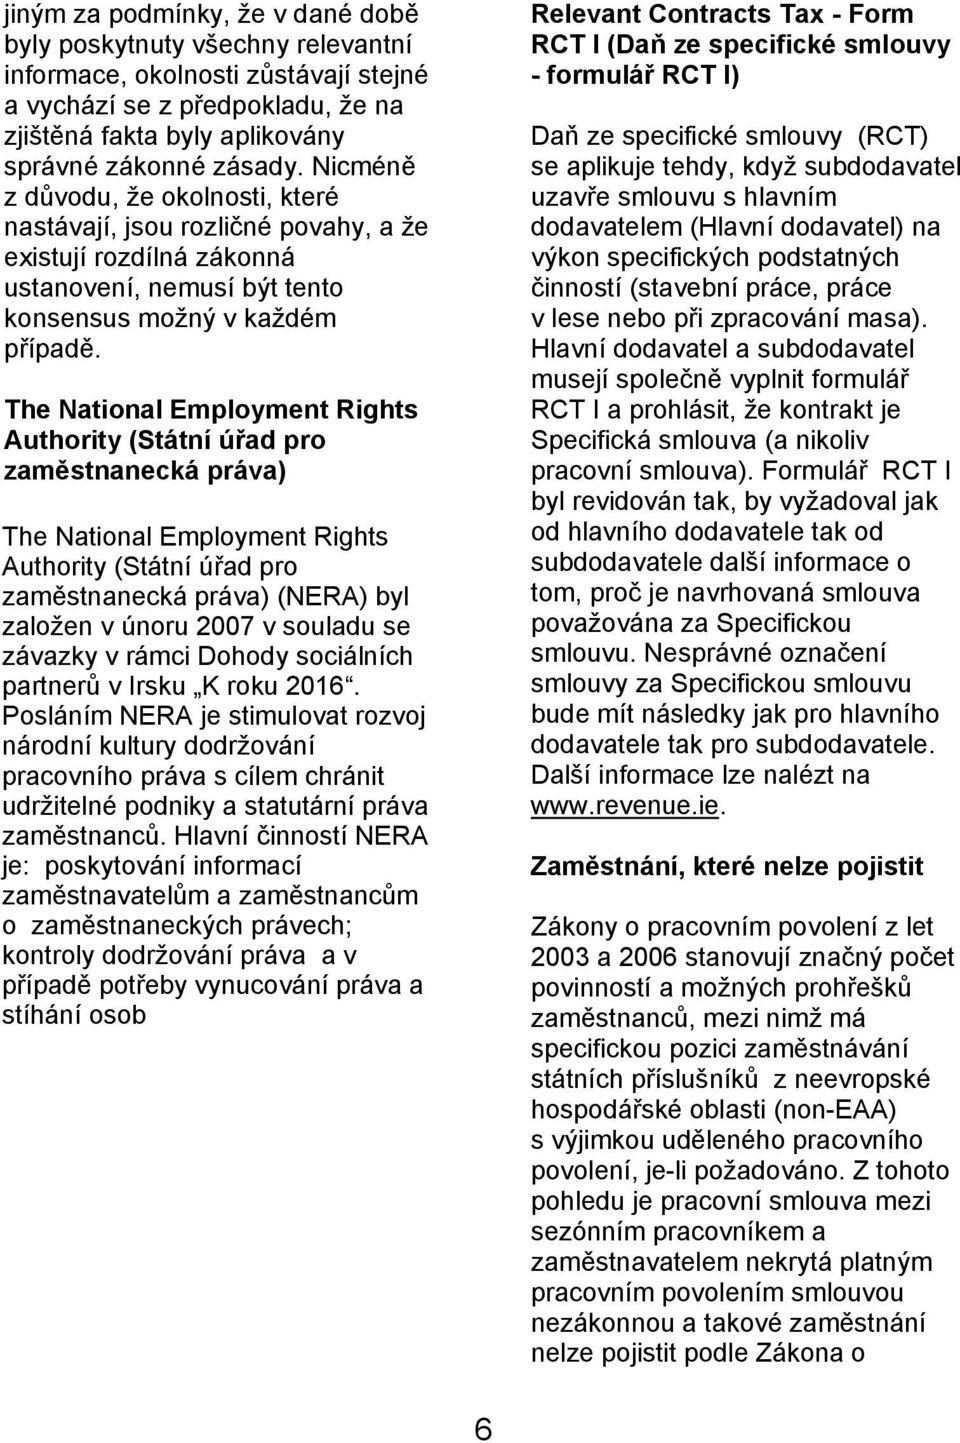 The National Employment Rights Authority (Státní úřad pro zaměstnanecká práva) The National Employment Rights Authority (Státní úřad pro zaměstnanecká práva) (NERA) byl založen v únoru 2007 v souladu